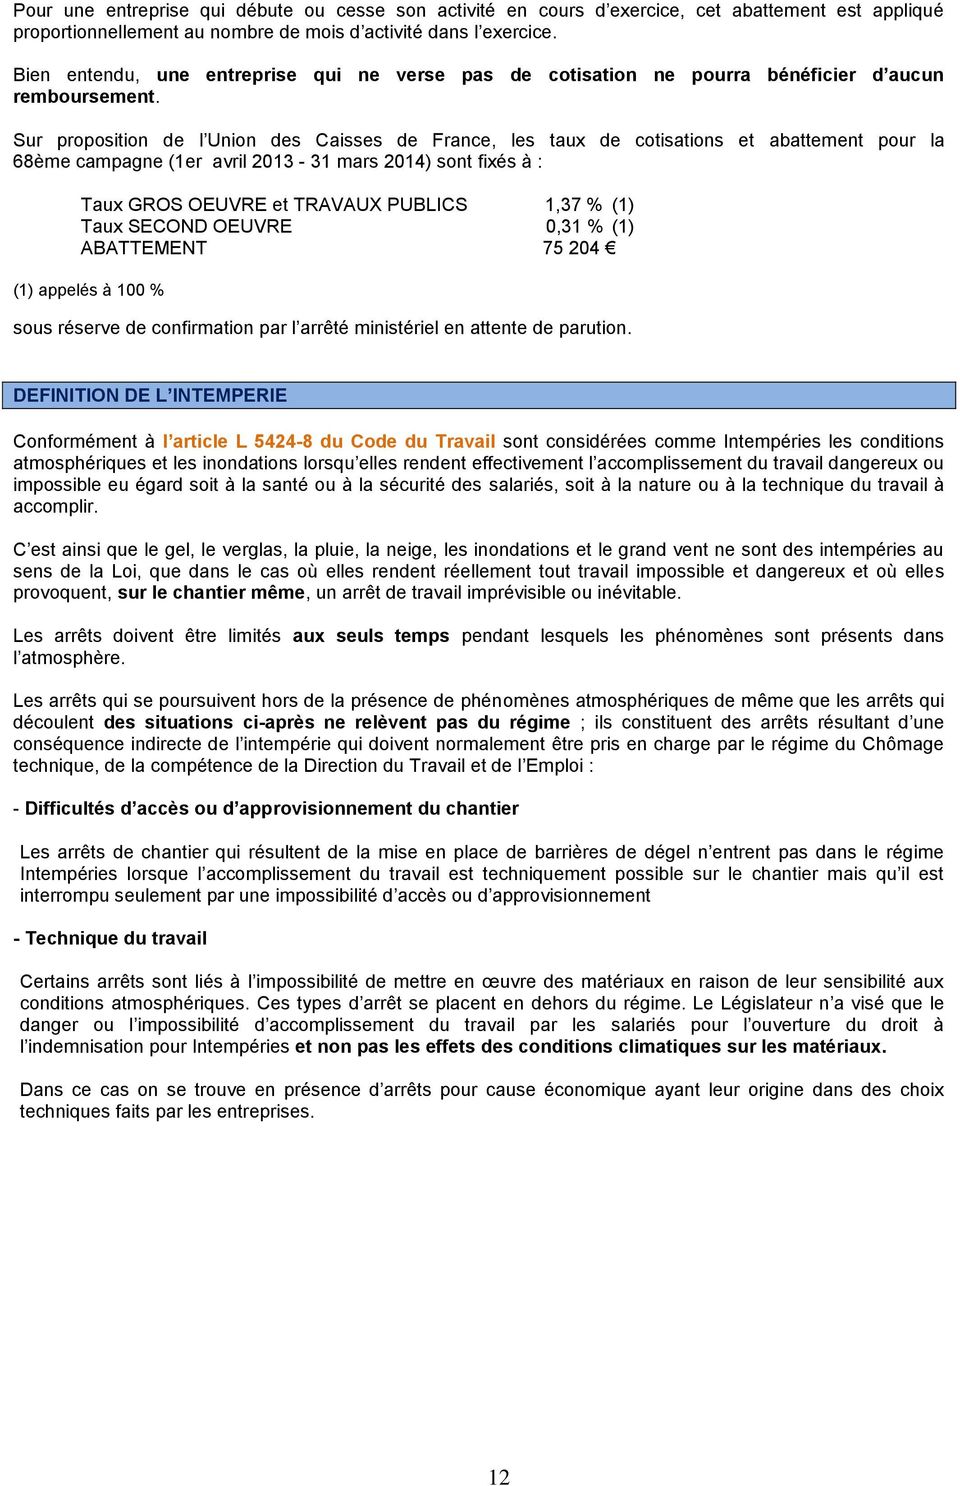 Sur proposition de l Union des Caisses de France, les taux de cotisations et abattement pour la 68ème campagne (1er avril 2013-31 mars 2014) sont fixés à : Taux GROS OEUVRE et TRAVAUX PUBLICS 1,37 %